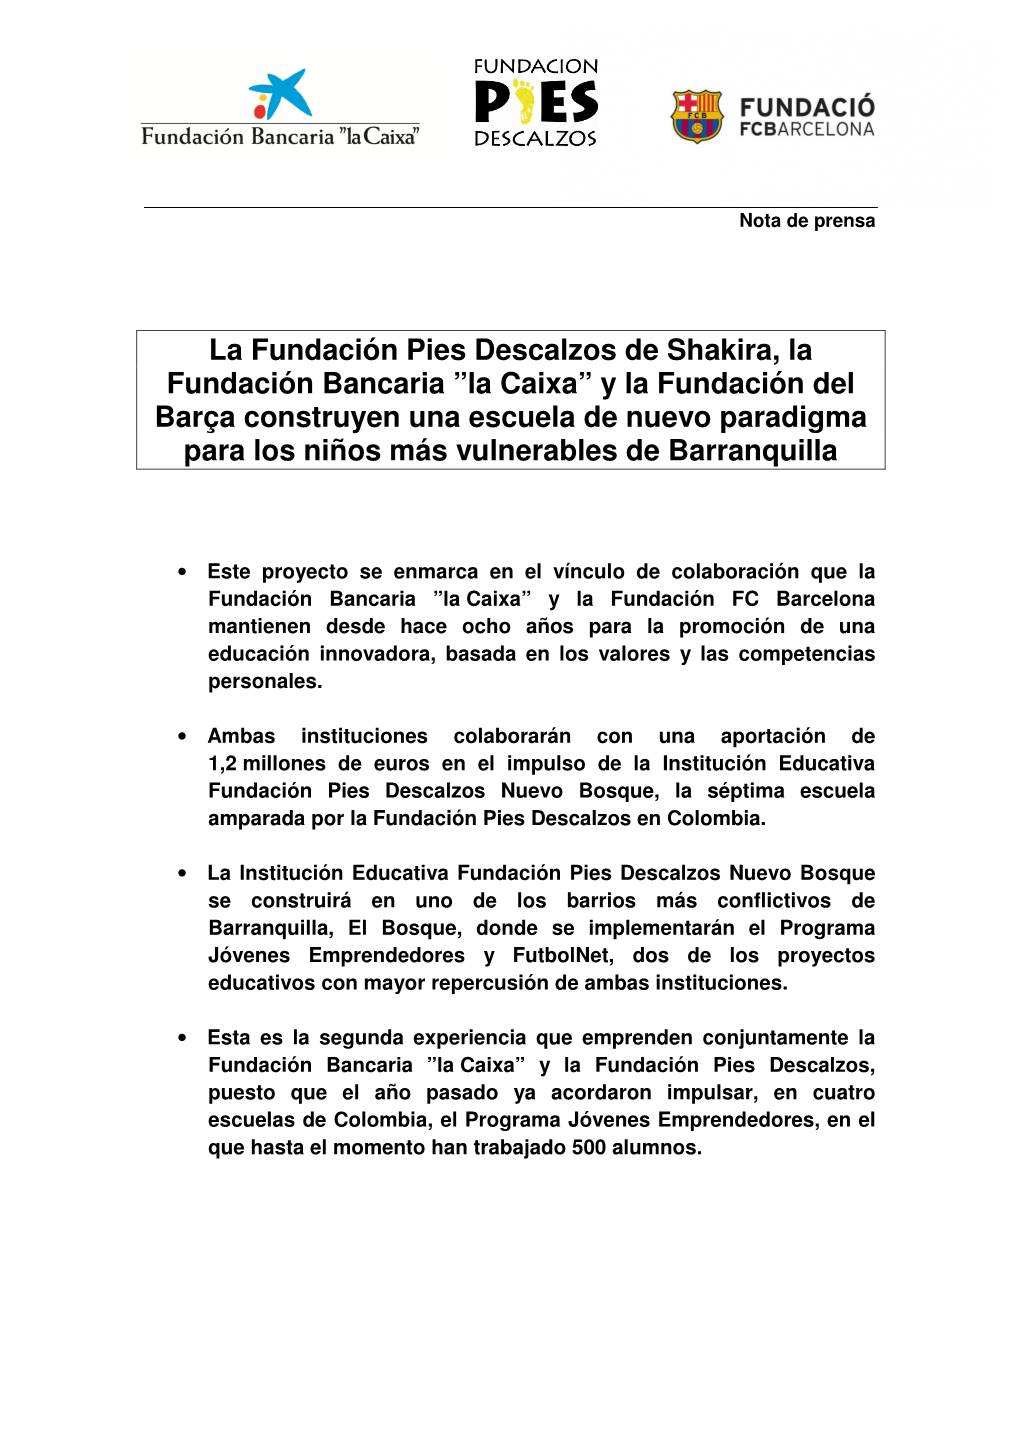 La Fundación Pies Descalzos De Shakira, La Fundación Bancaria ”La